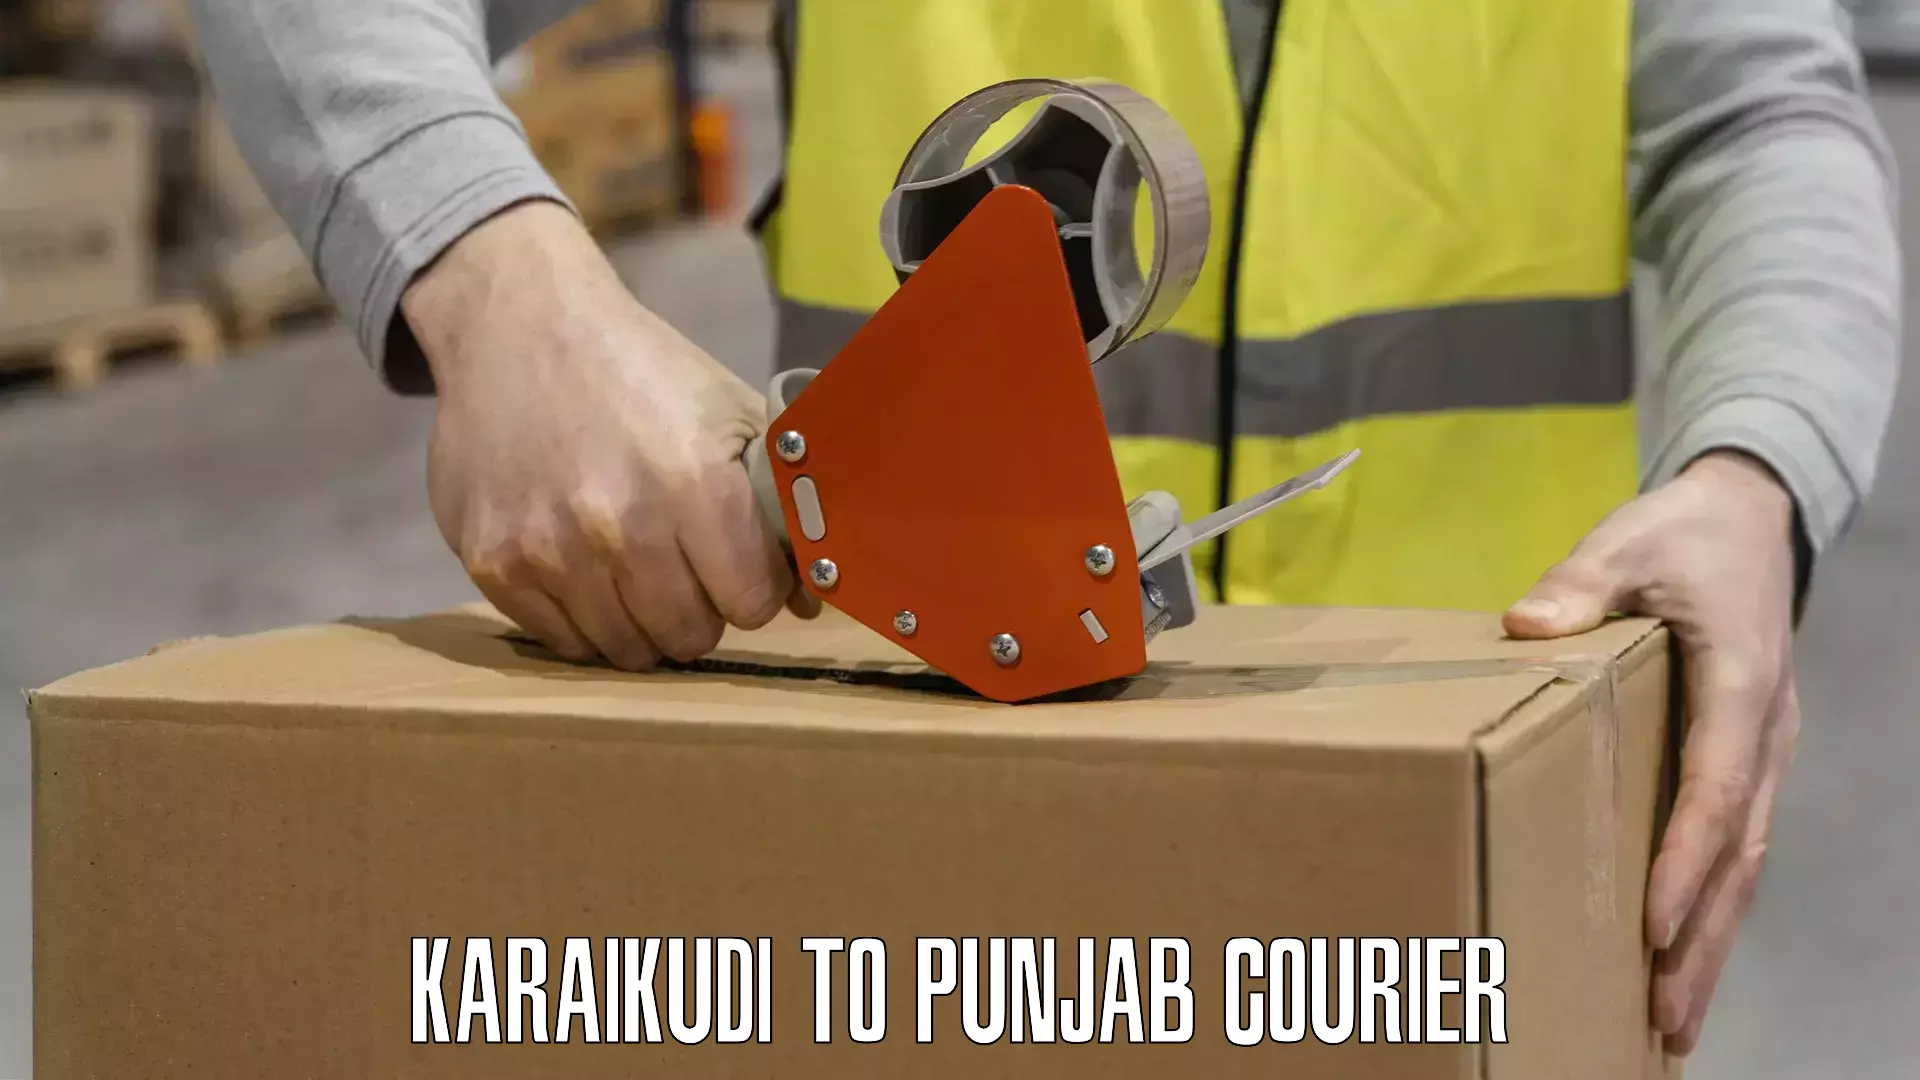 Full-service courier options Karaikudi to Patran